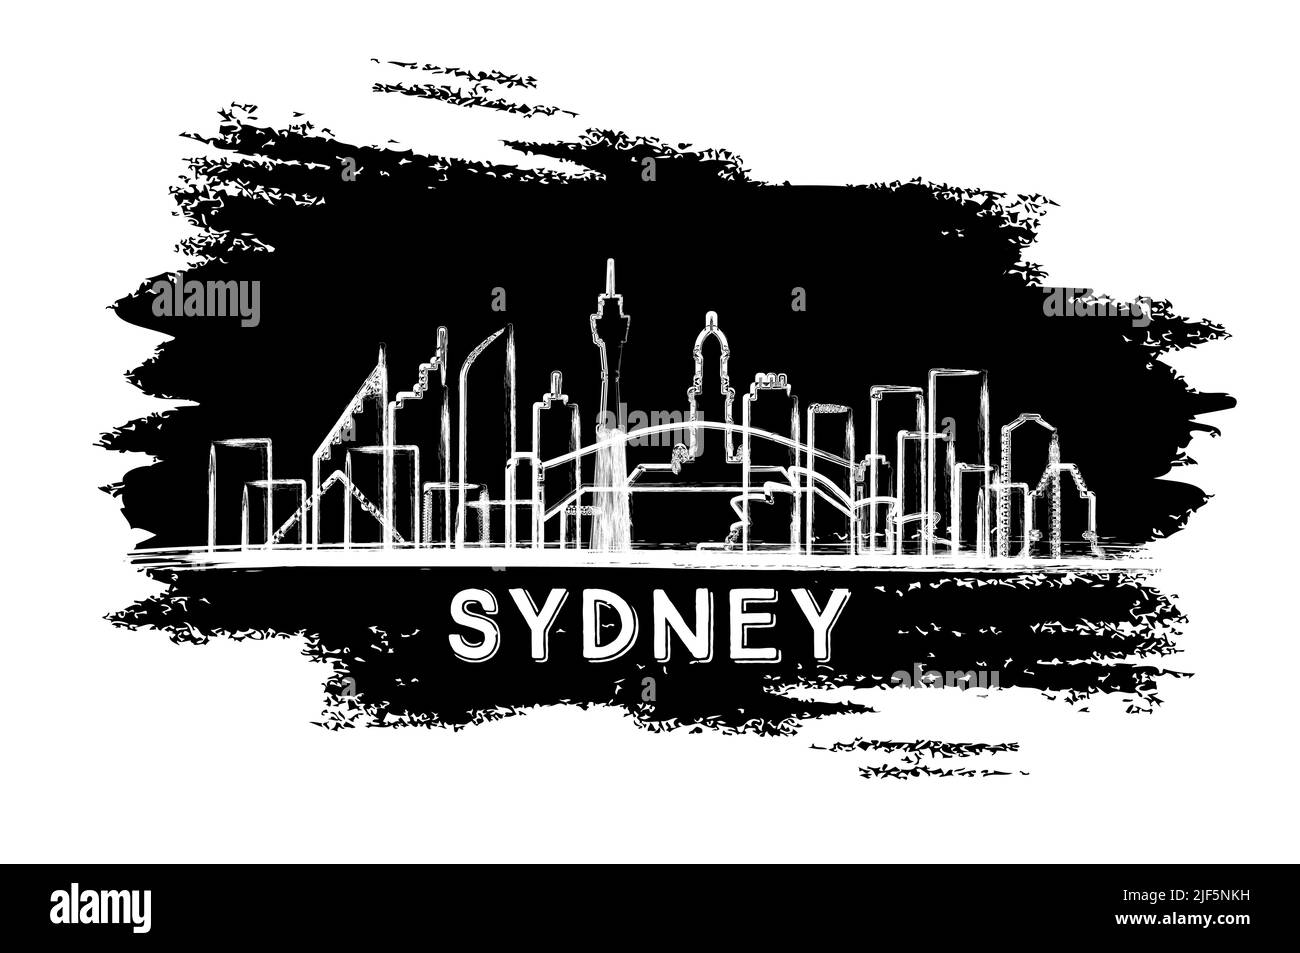 Sydney Australia City Skyline Silhouette. Esquisse dessinée à la main. Voyages d'affaires et tourisme concept avec architecture moderne. Illustration vectorielle. Illustration de Vecteur